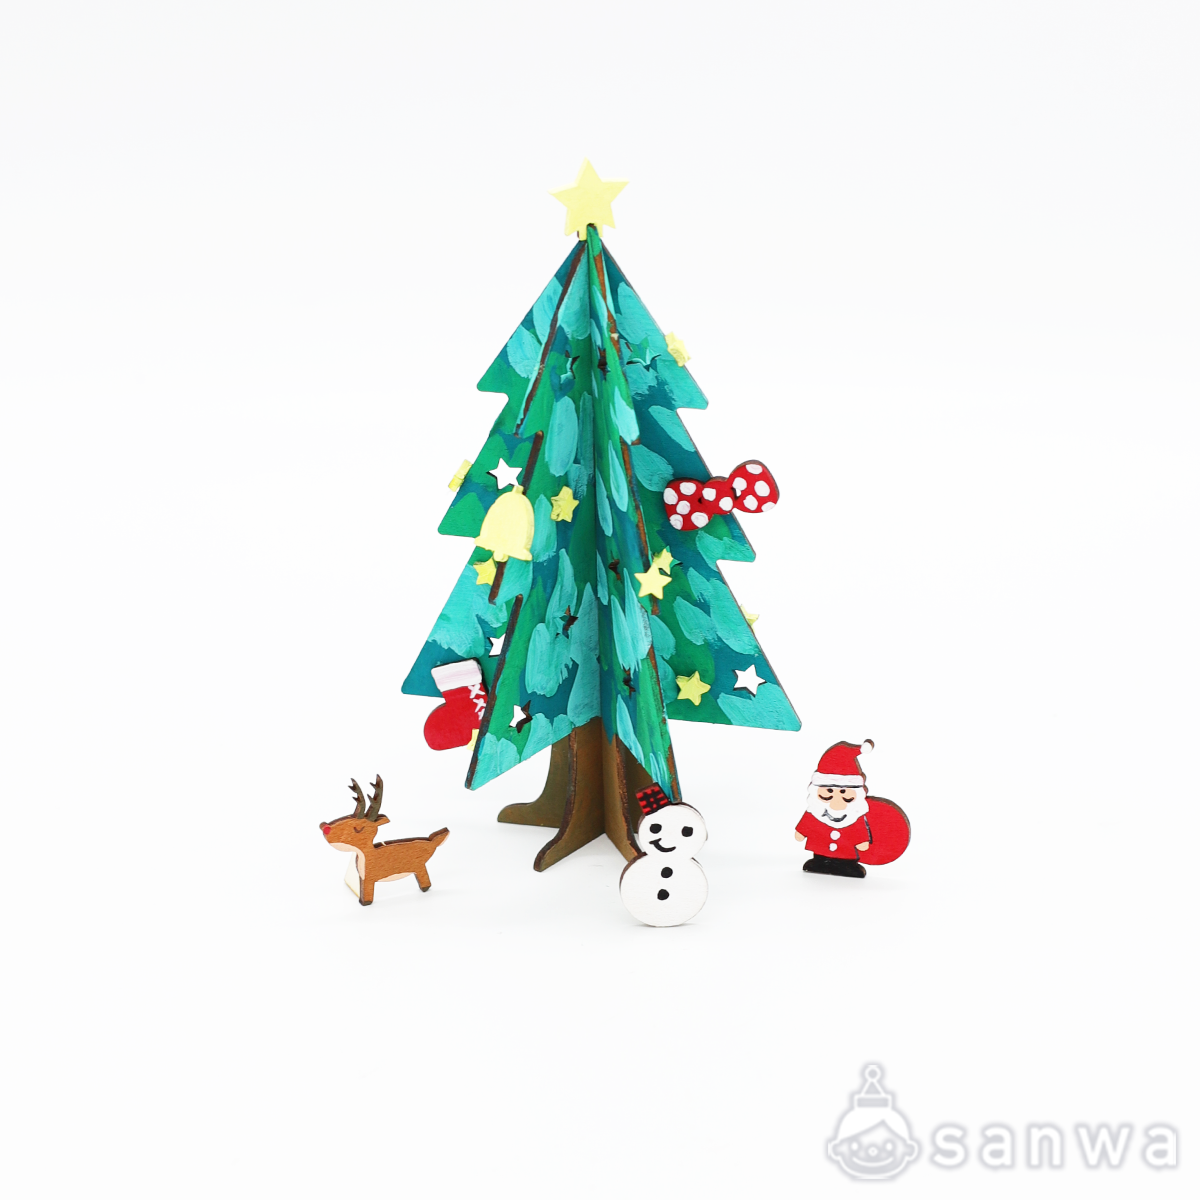 塗るだけ簡単」かんたん木製クリスマスツリー【クリスマス工作キット】（５００円以下の工作, 作って飾れる工作） イベント工作キットの「たのつく」